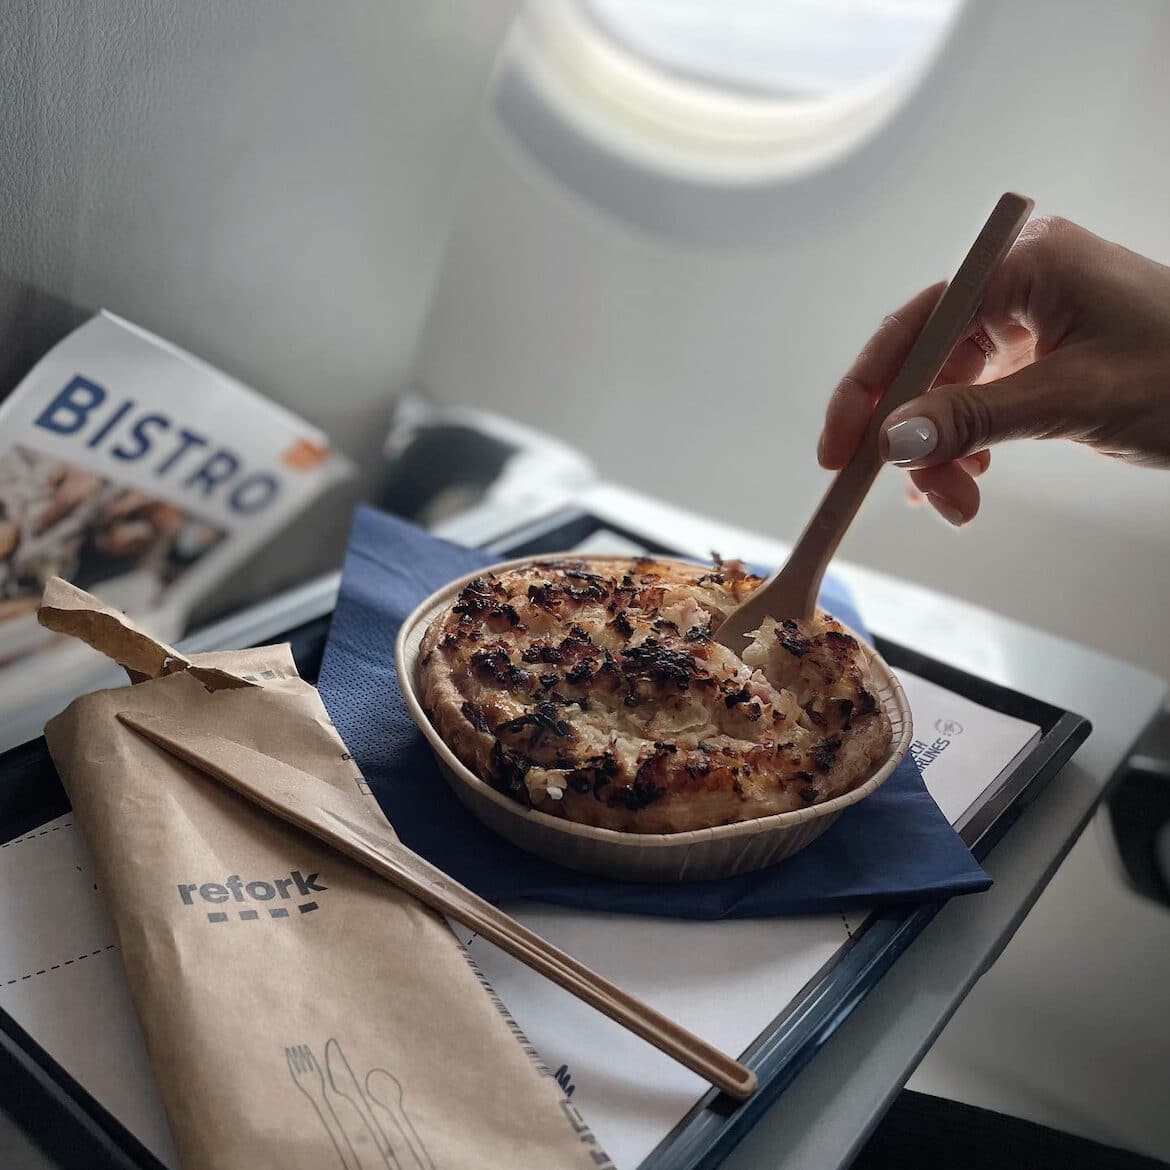 Refork cubiertos en una bandeja de comida junto a un pastel de puré de patatas. Vista desde un avión. 